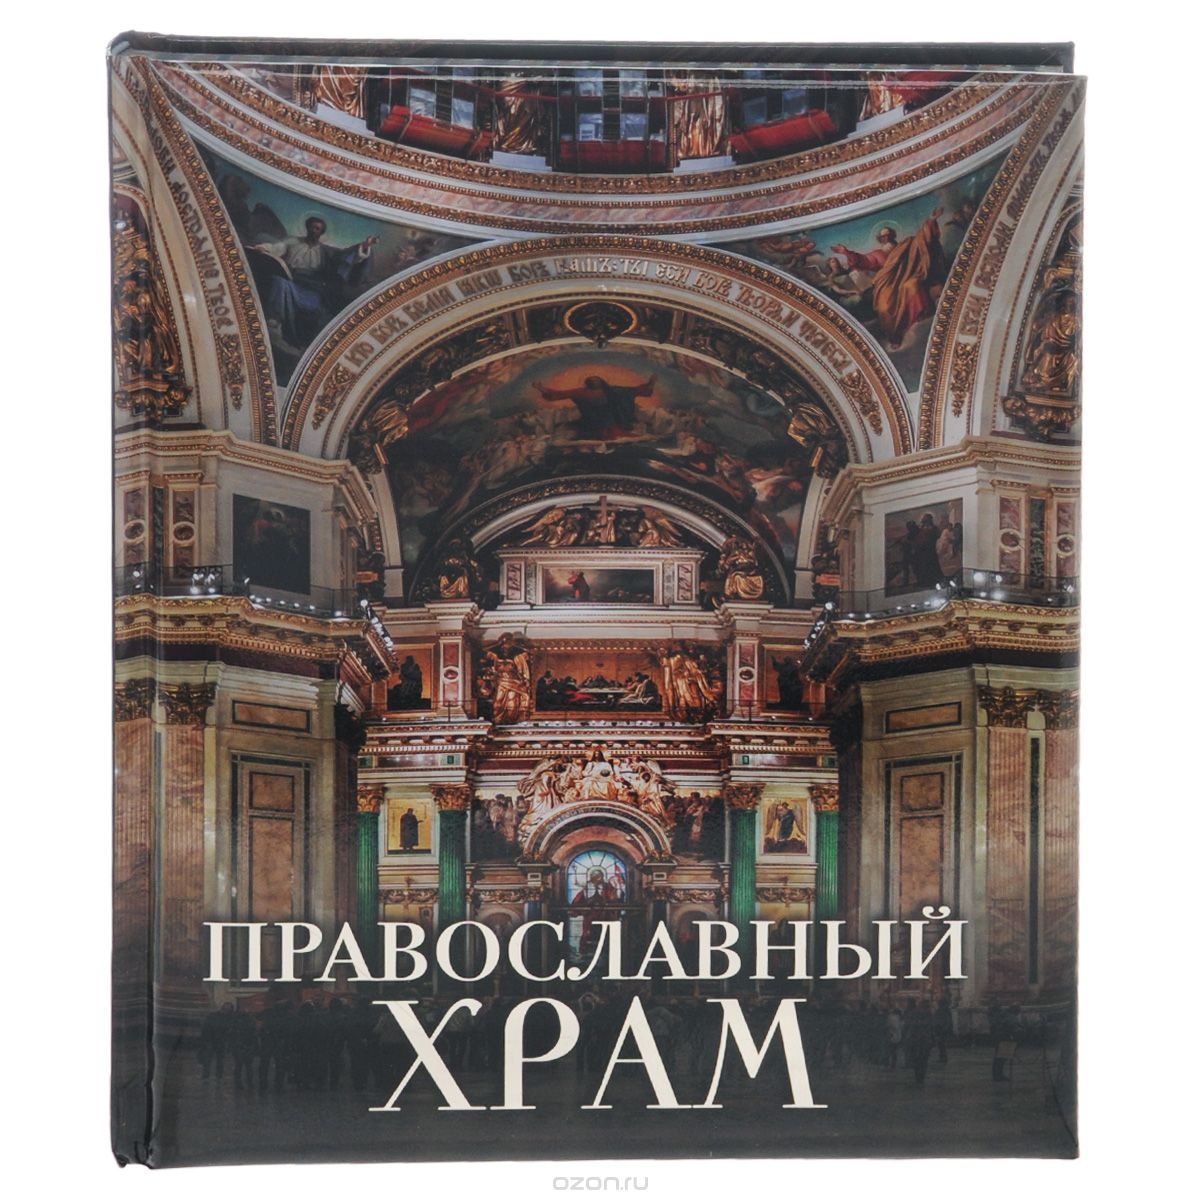 Скачать книгу "Православный храм, А. Н. Казакевич"